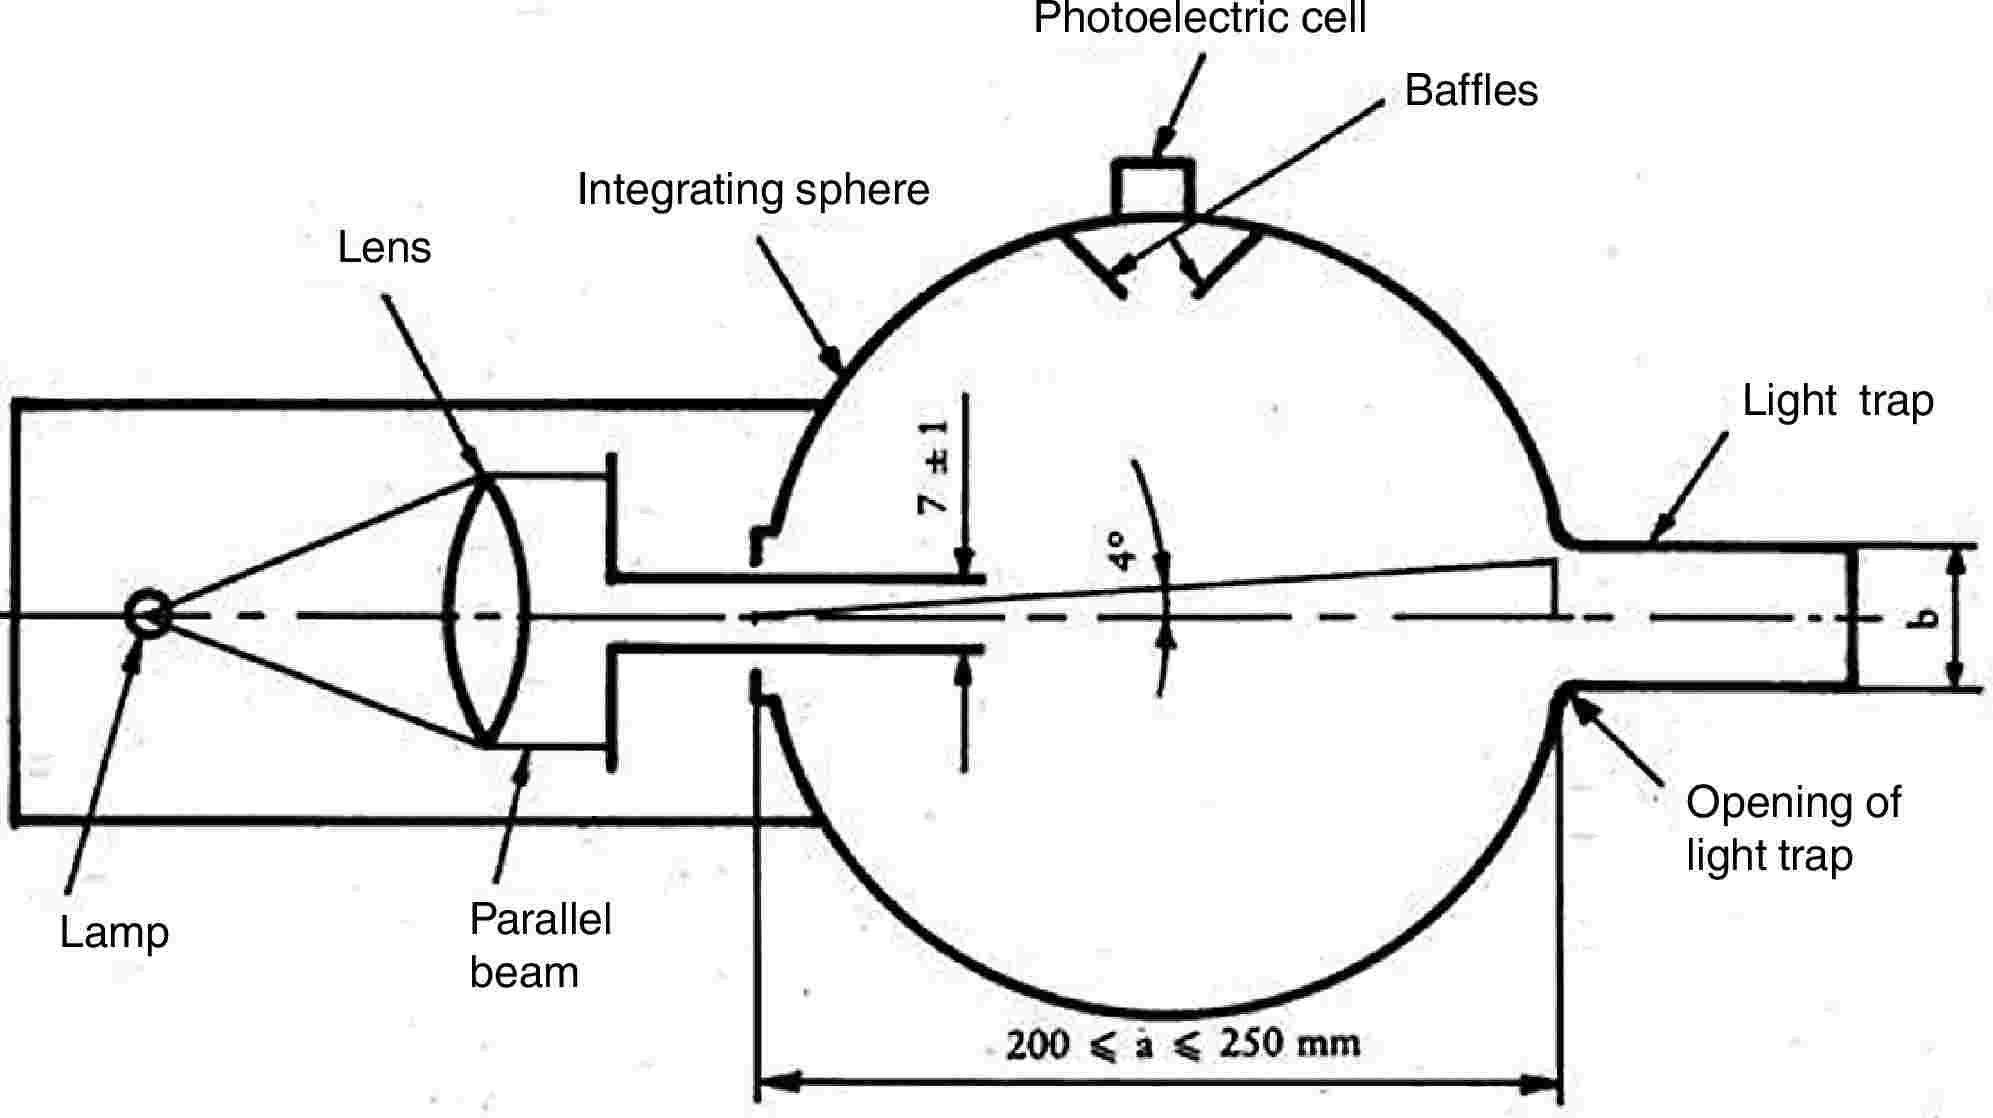 LensIntegrating spherePhotoelectric cellBafflesLight trapLampParallel beamOpening of light trap